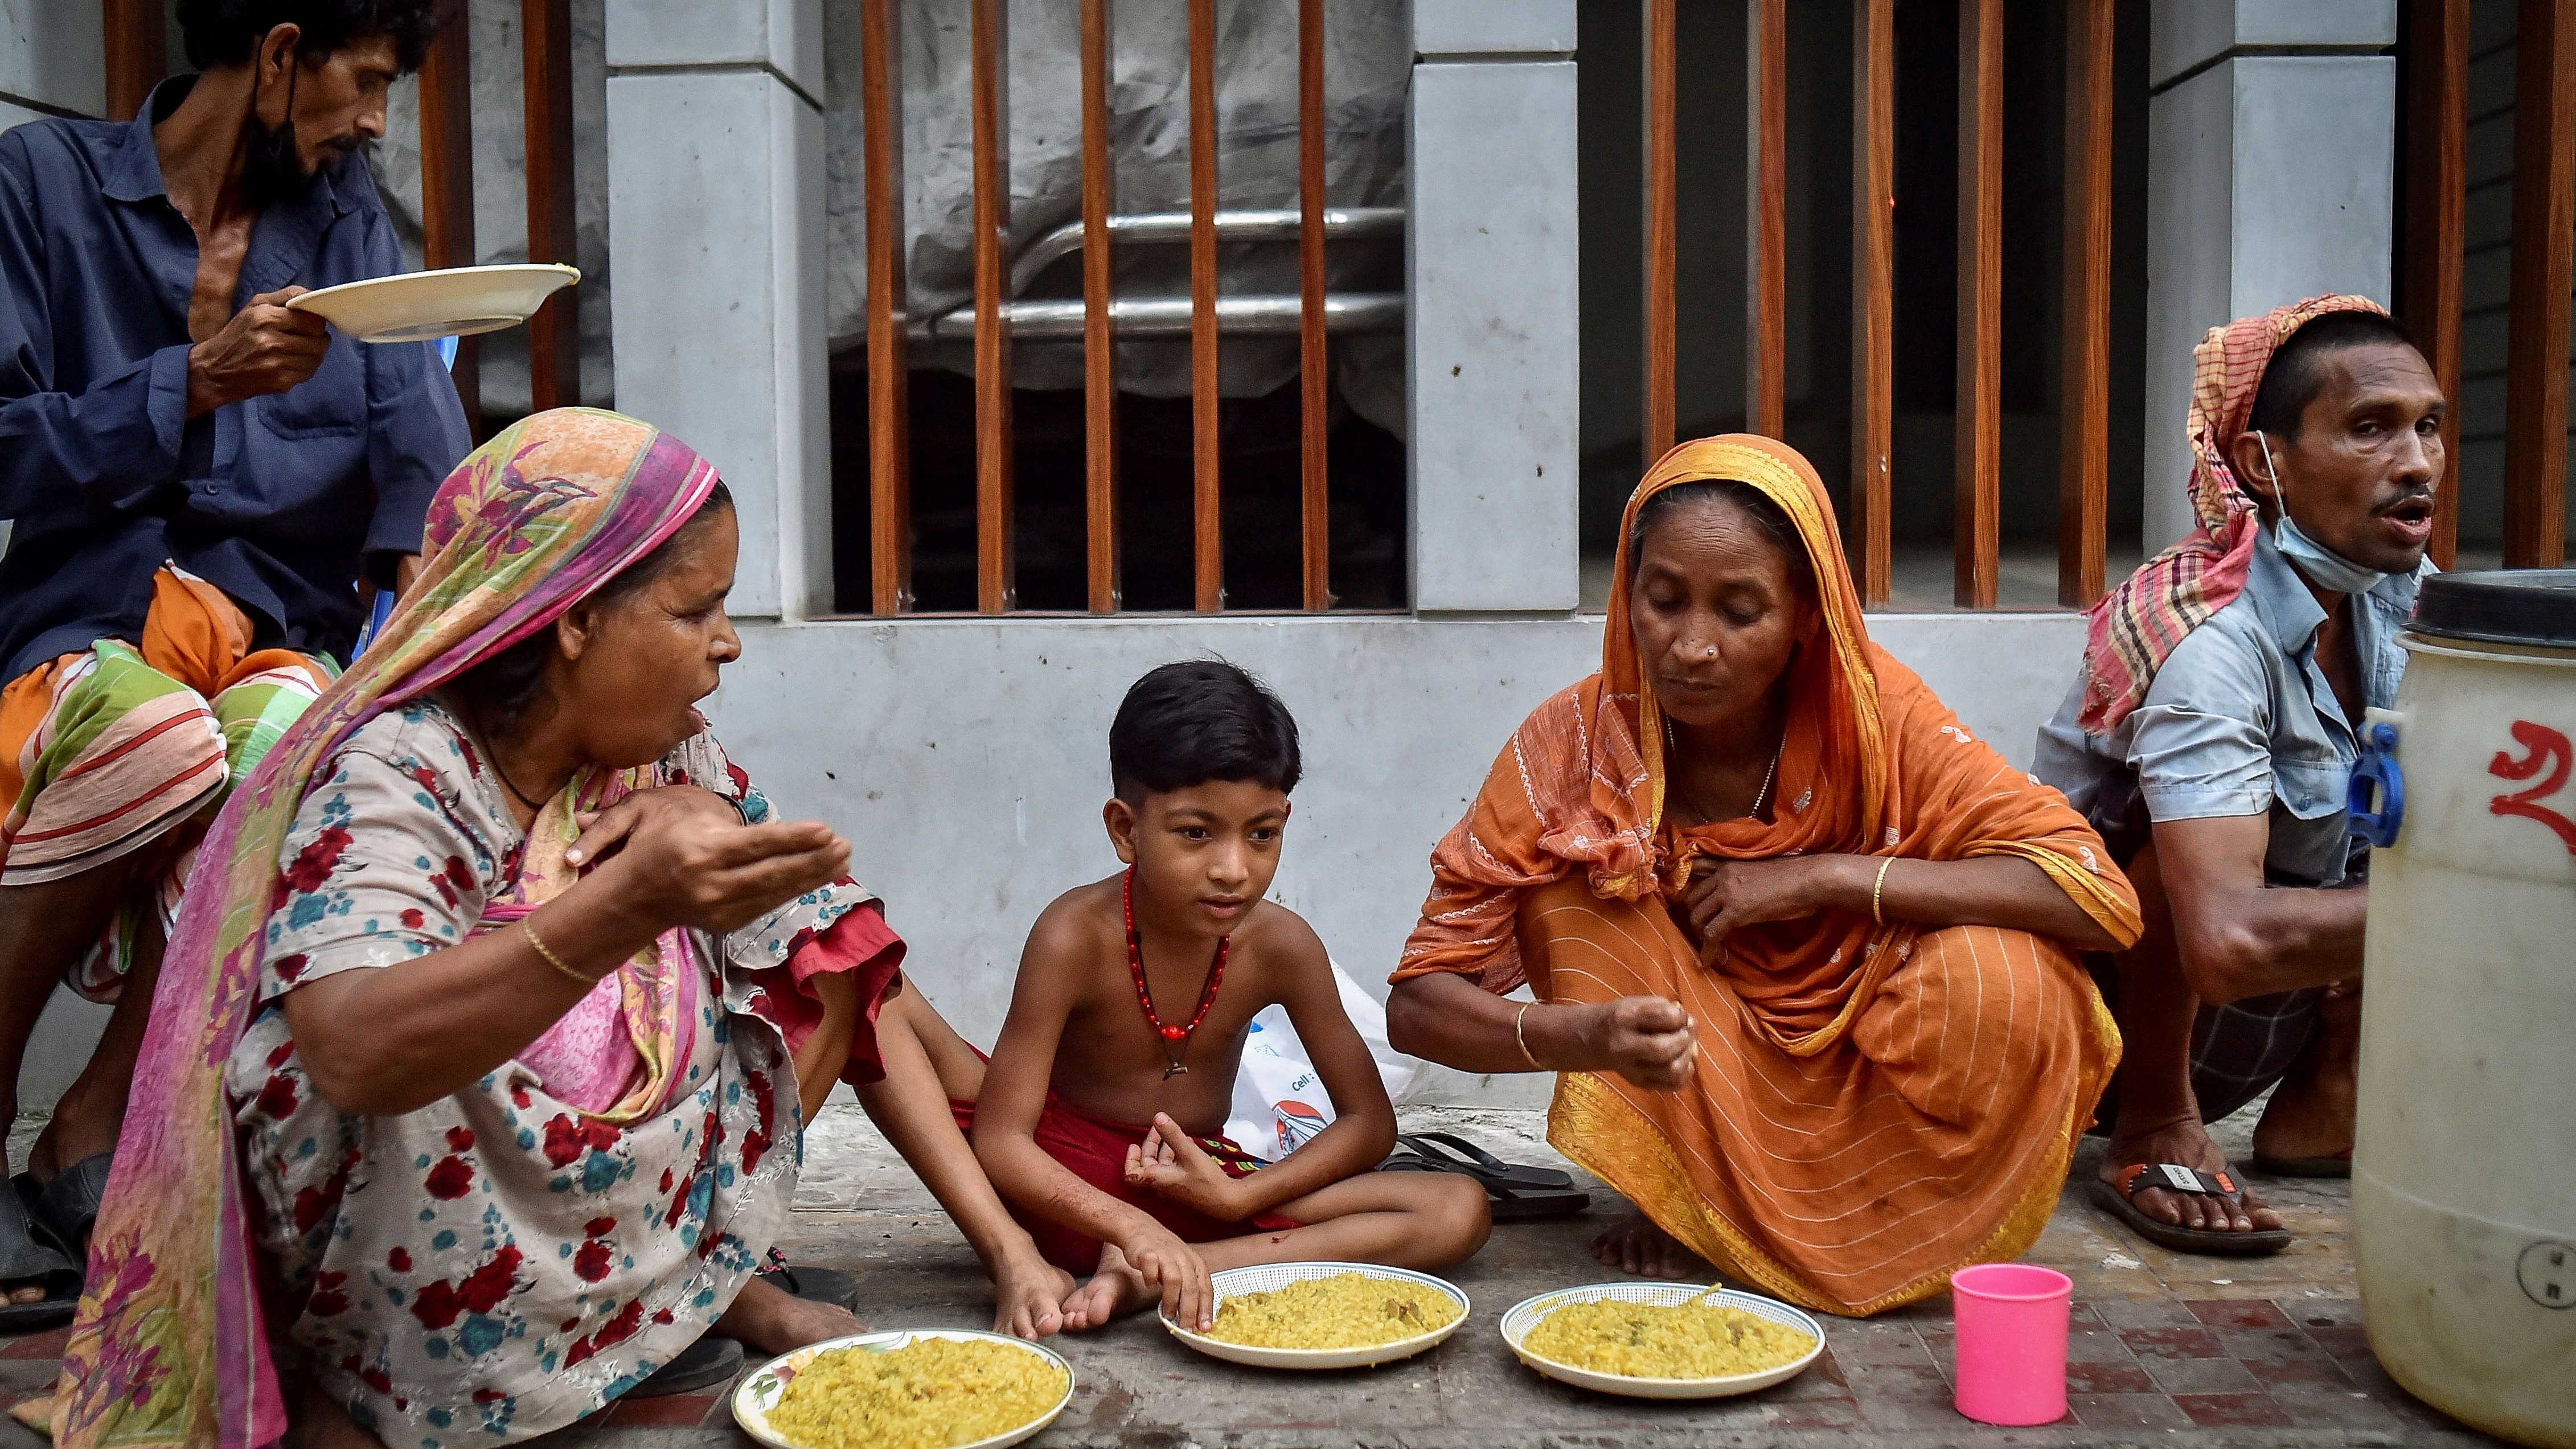 يأكلون من أحد مطاعم الرصيف المخصصة للفقراء في بنغلادش